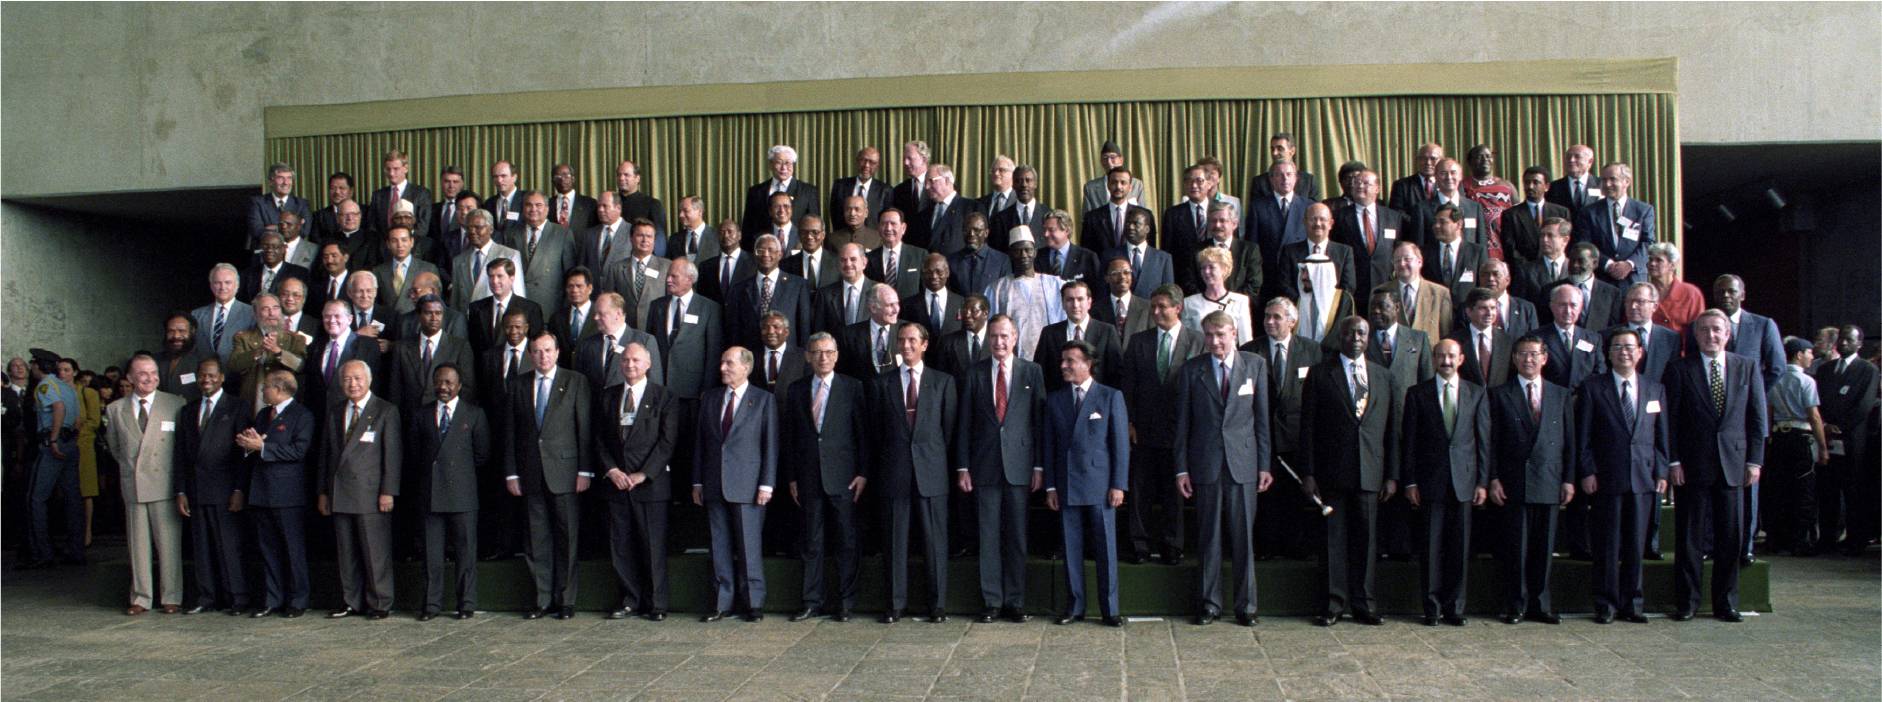 1992 г оон. Саммит в Рио де Жанейро 1992. Саммит земли в Рио-де-Жанейро. Саммит земли в Рио 1992. Саммит земли 1992 участники.